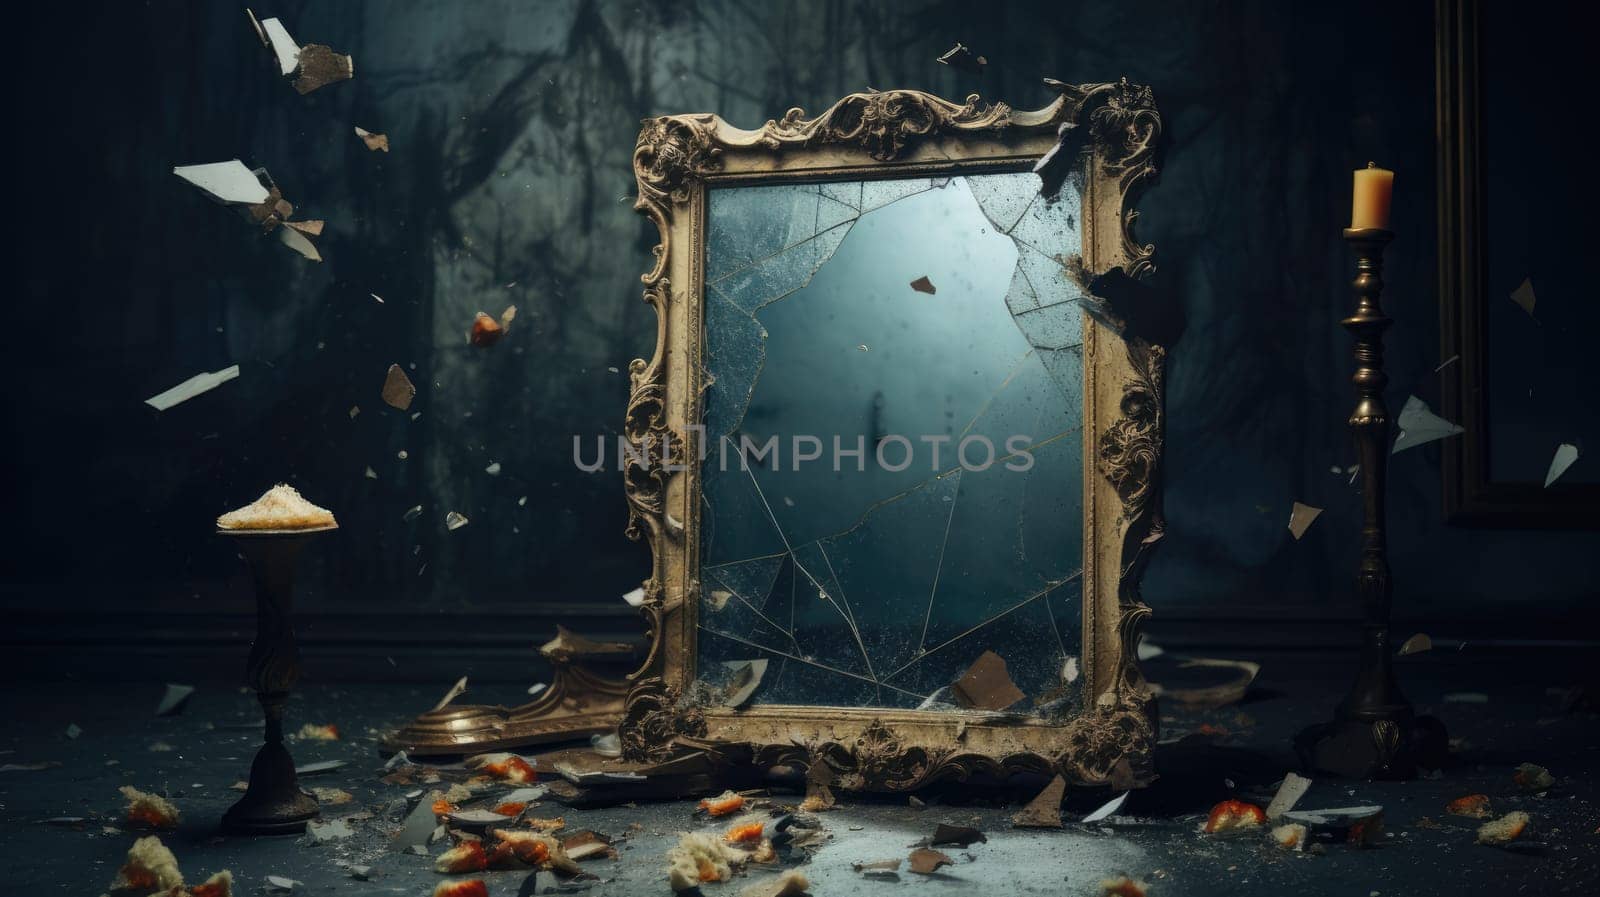 Broken vintage mirror in a frame on a dark background by natali_brill